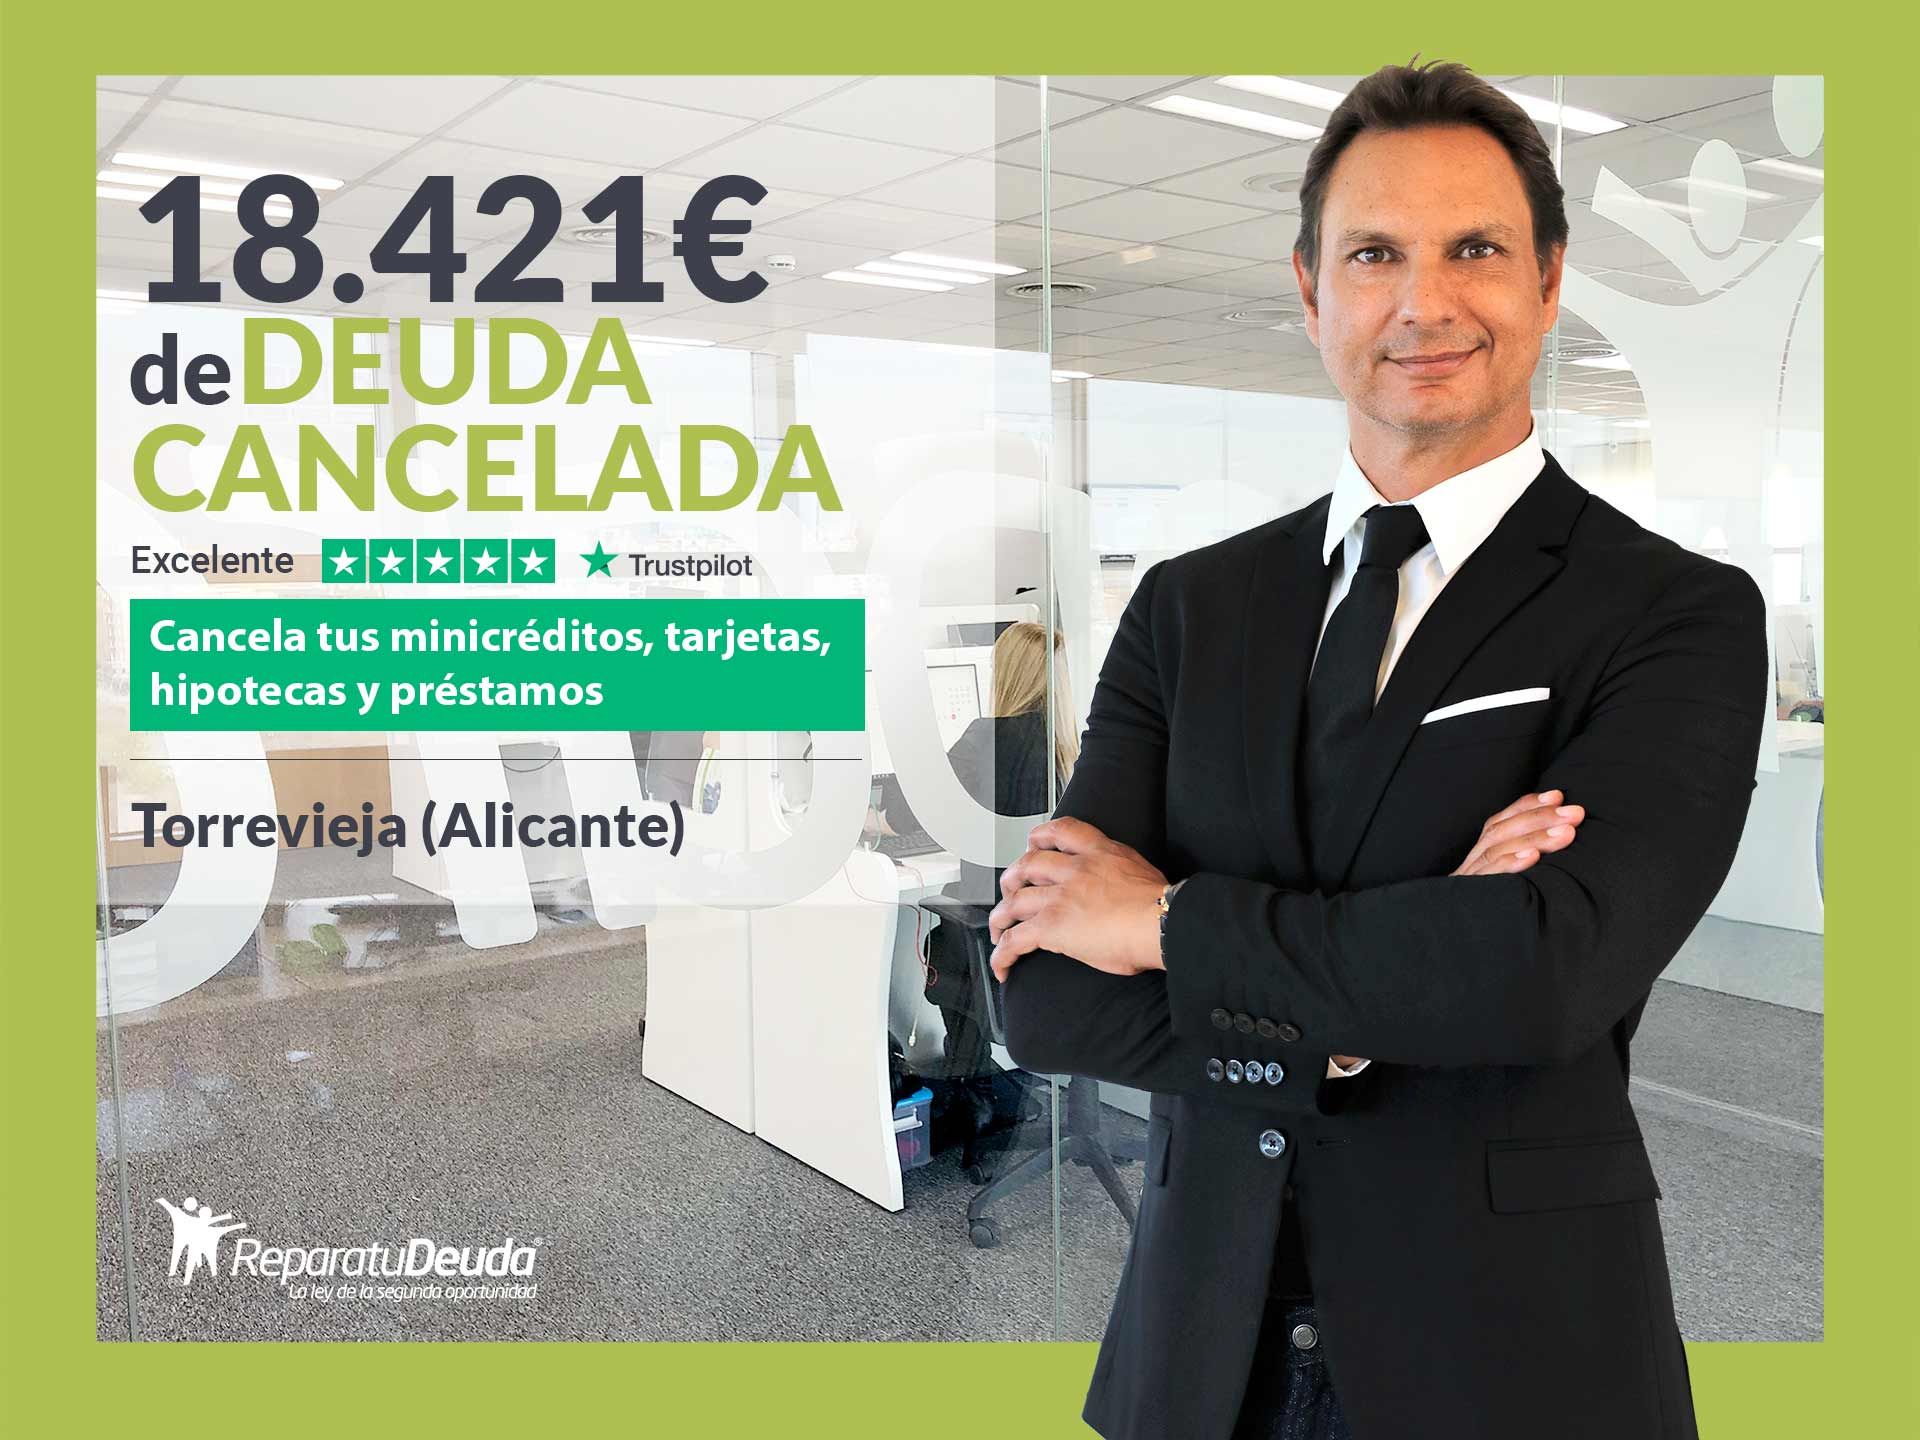 Repara tu Deuda Abogados cancela 18.421? en Torrevieja (Alicante) con la Ley de la Segunda Oportunidad